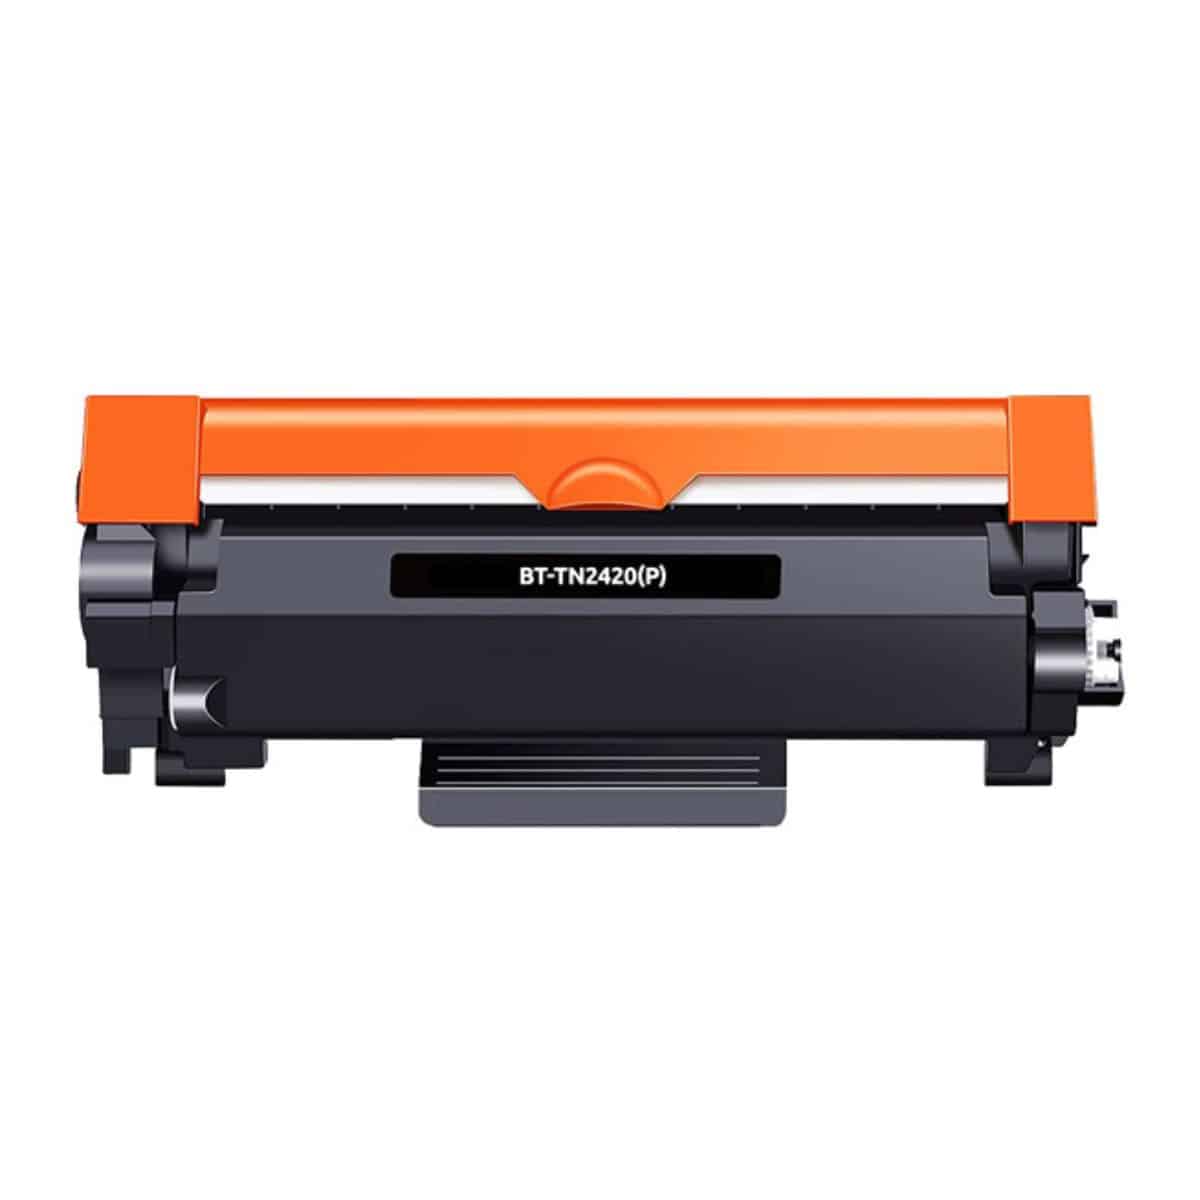 Toner Noir 3000 p. TN-2420 pour imprimante Laser Compatible Brother